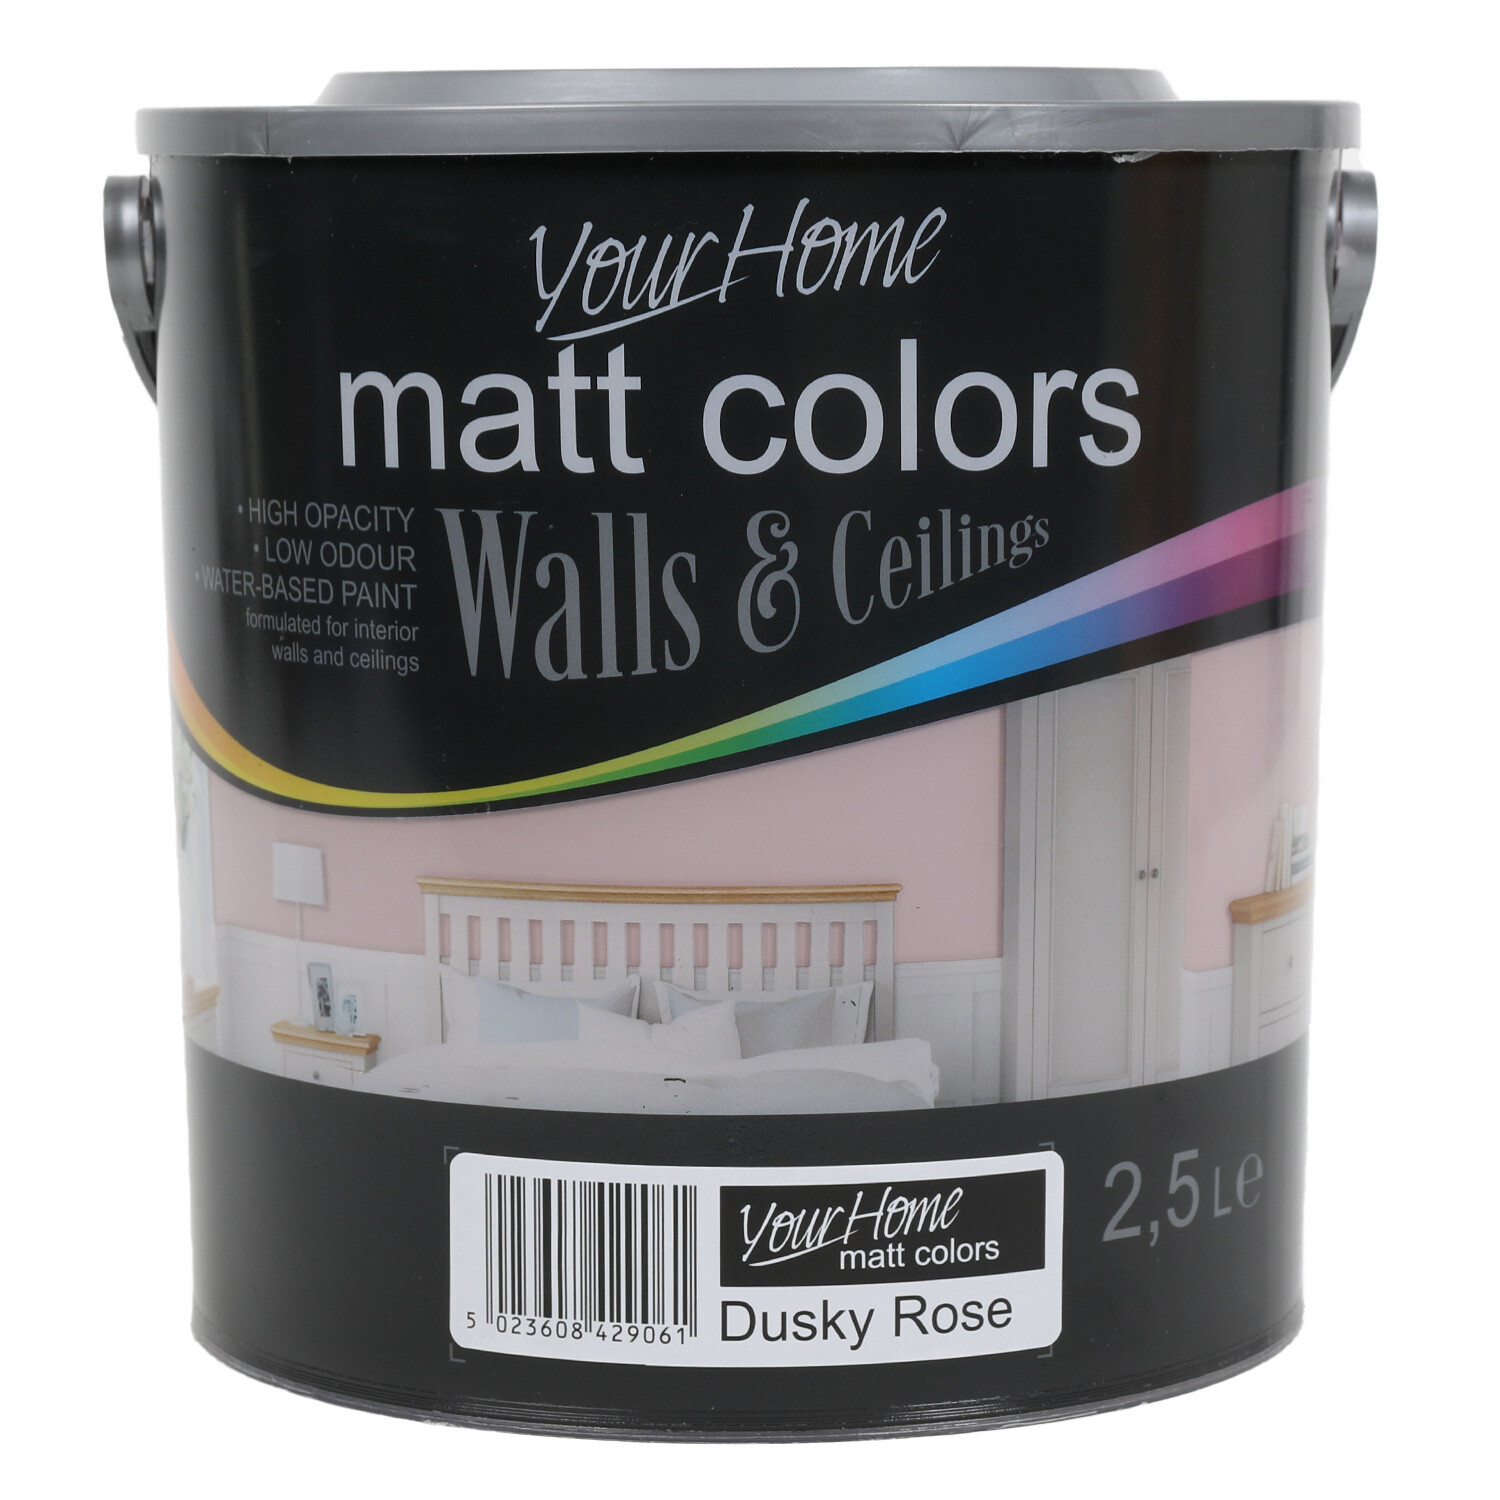 Your Home Walls & Ceilings Dusky Rose Matt Emulsion Paint 2.5L Image 1